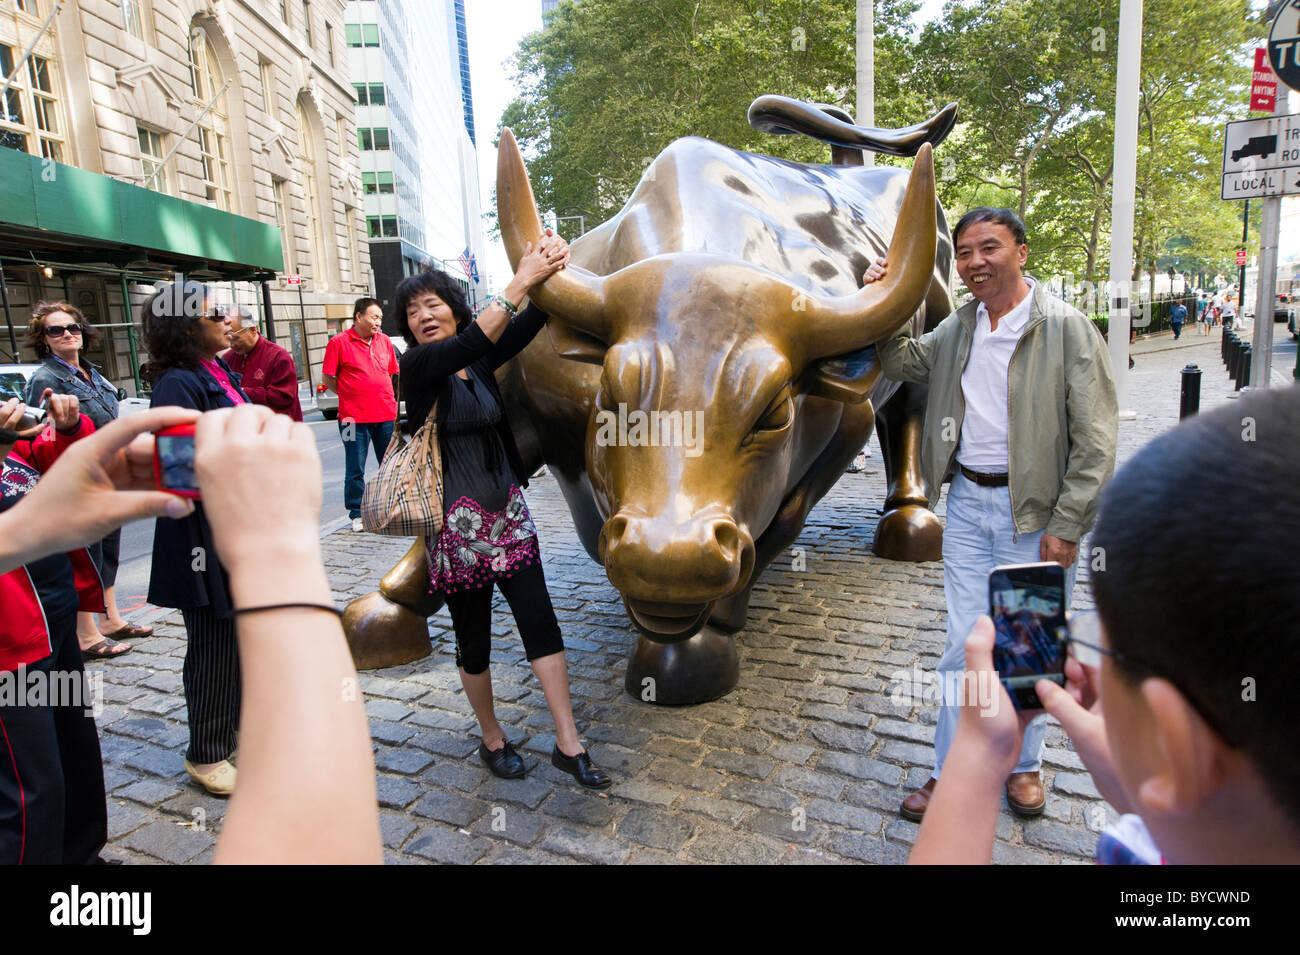 Les touristes se faisant passer pour des photos en plus de la sculpture bull charge près de Wall Street , New York City, États-Unis d'Amérique Banque D'Images